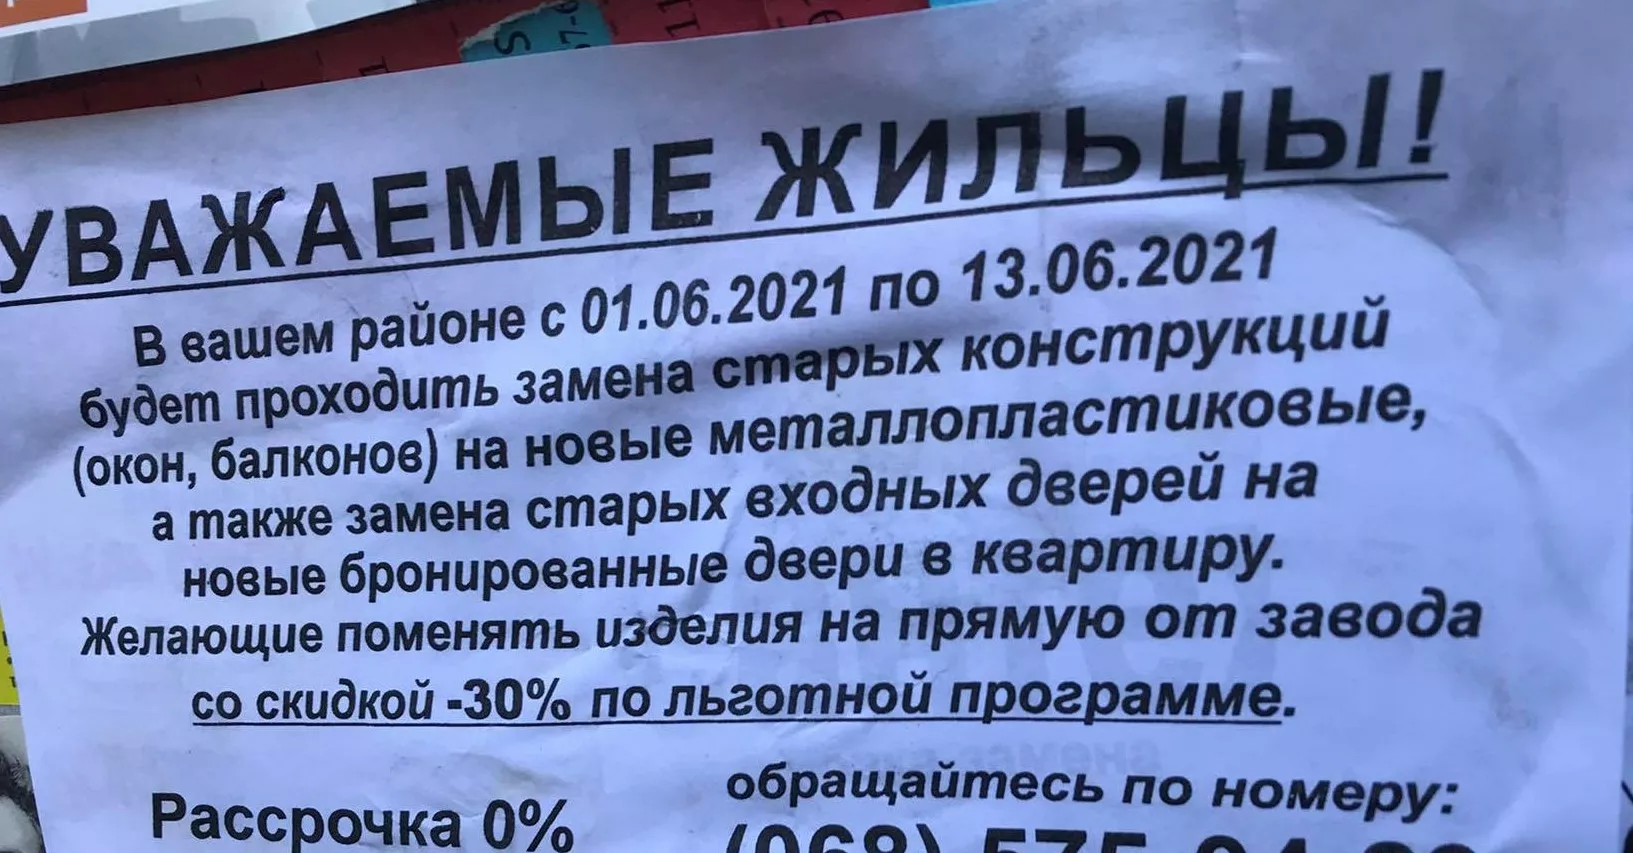 Подобные объявления расклеили по Киеву / Фото: пресс-служба КГГА